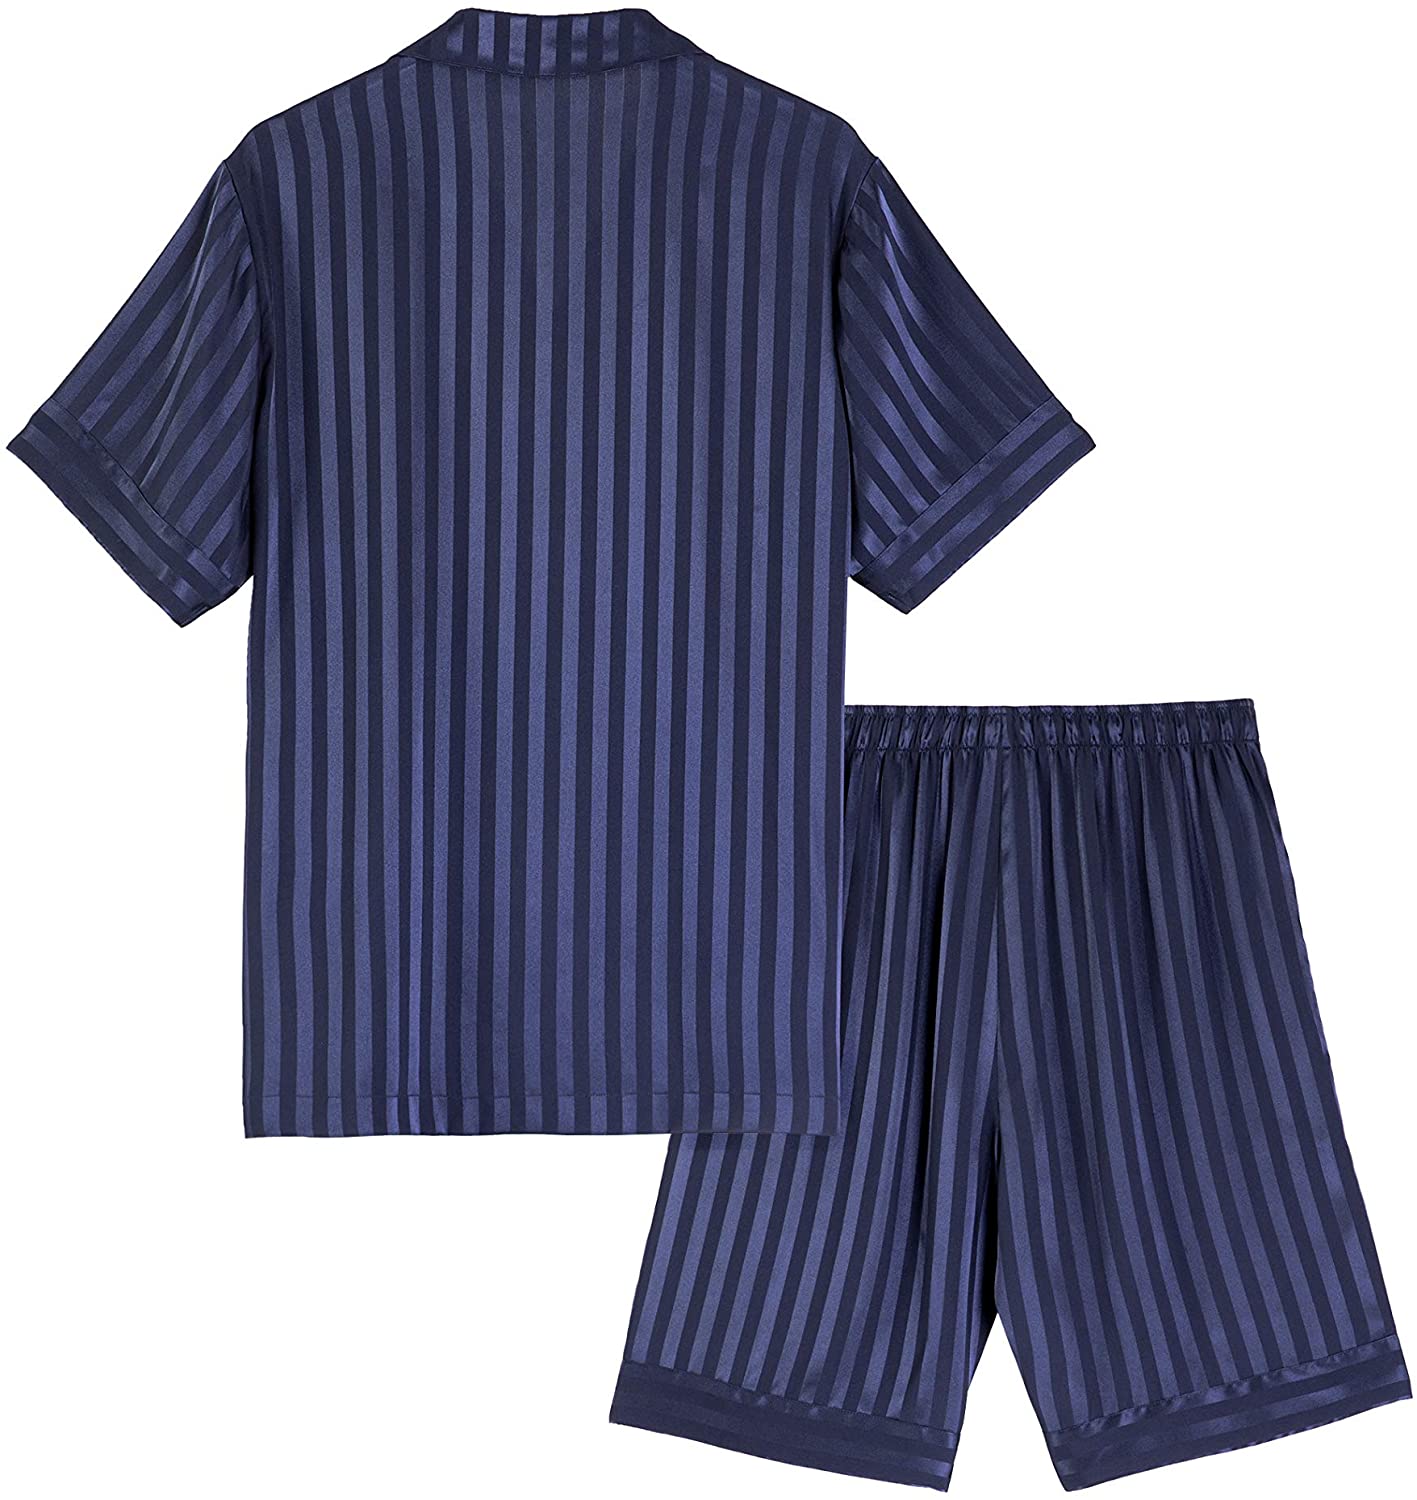 david archy pajamas review